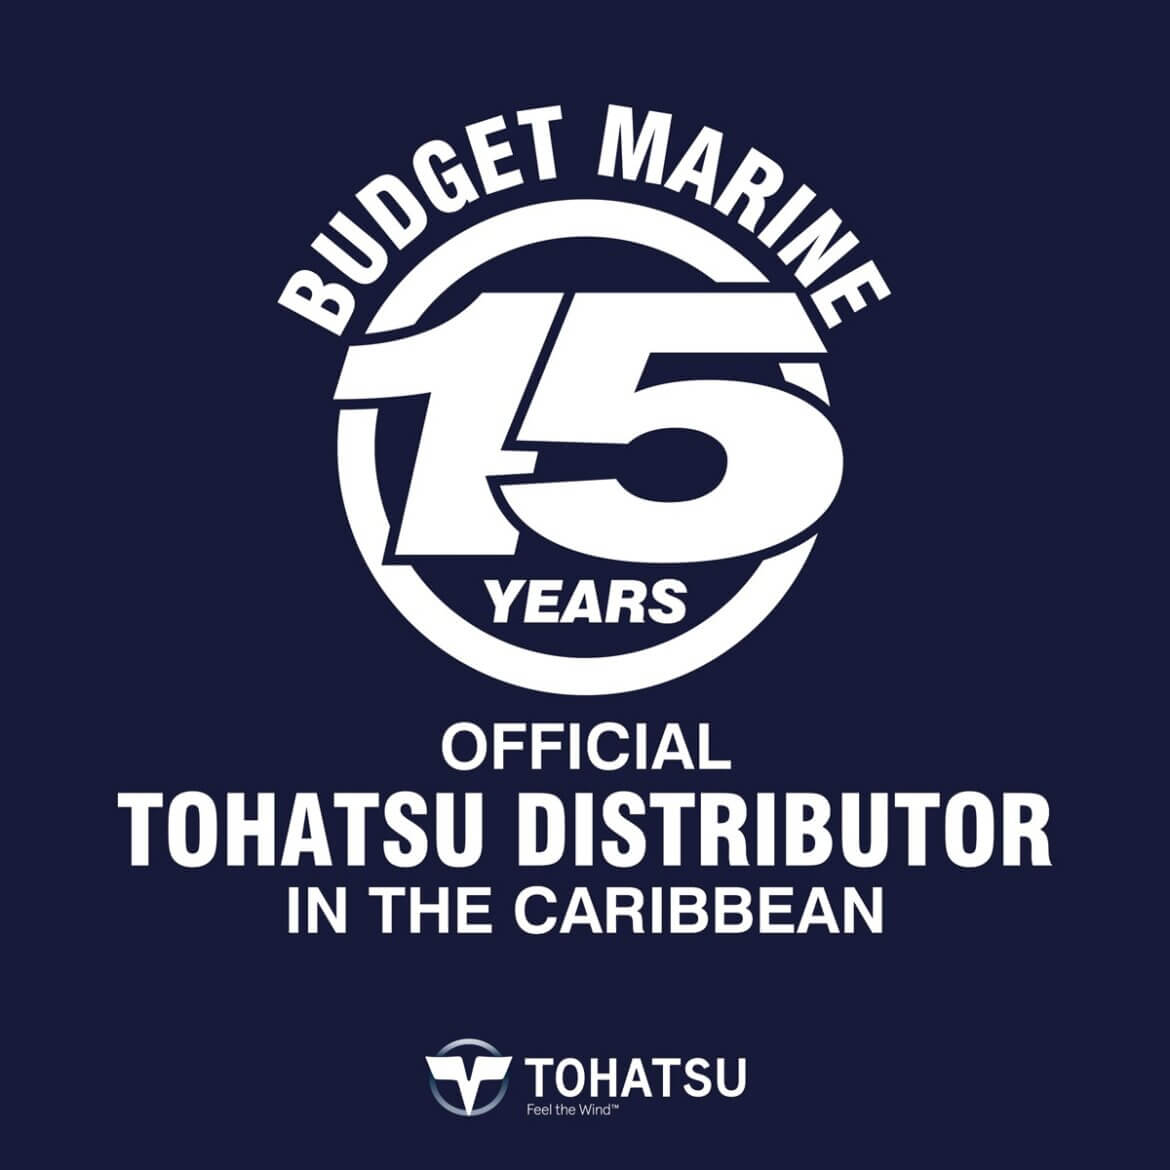 Budget Marine Carriacou 6